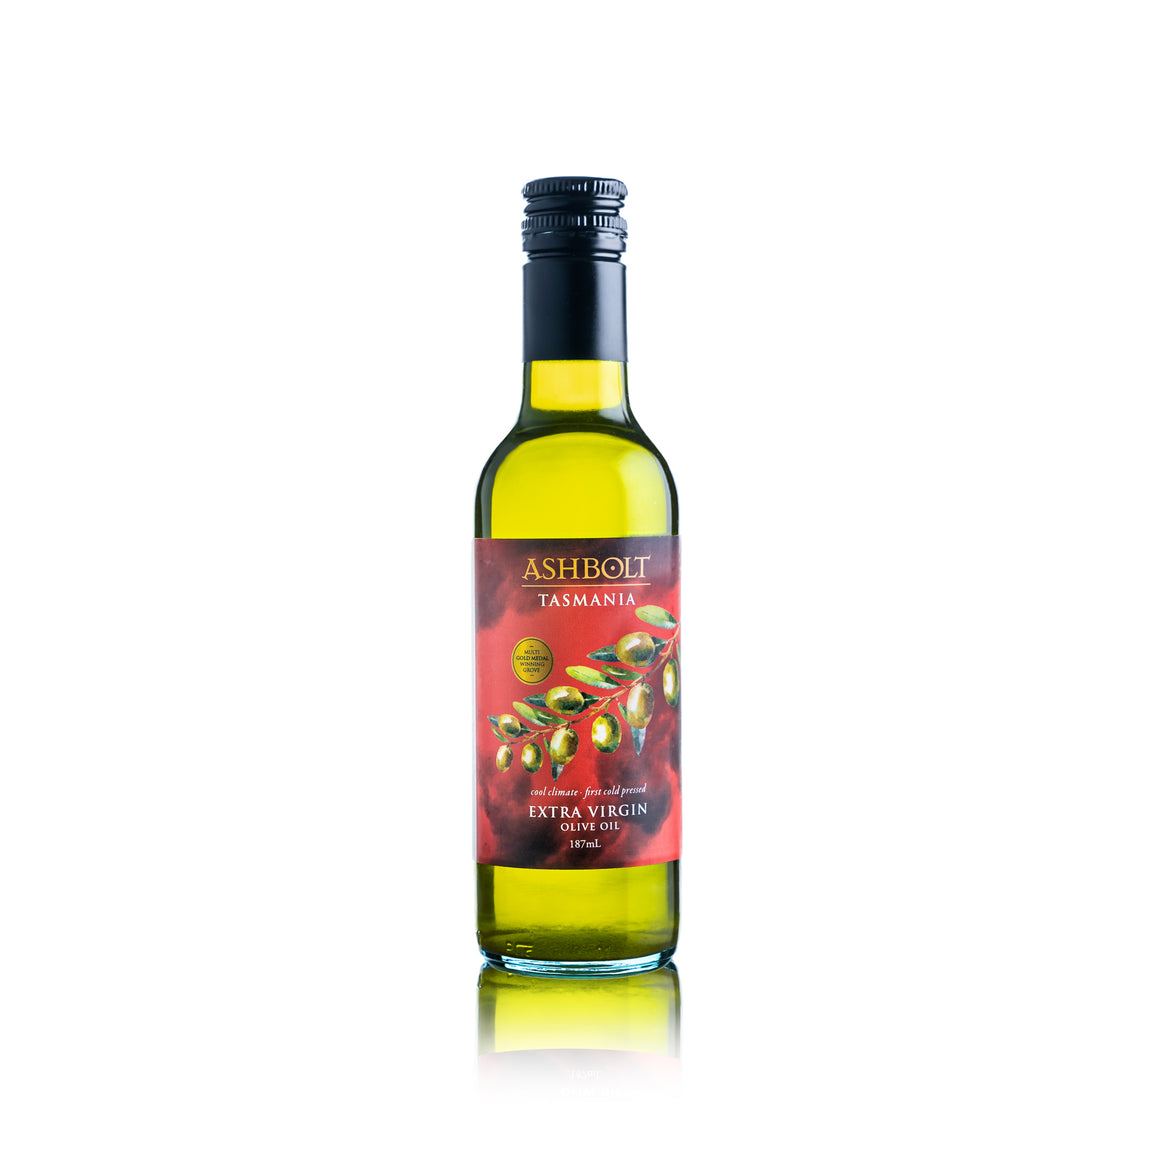 A bottle of Ashbolt Extra Virgin Olive Oil